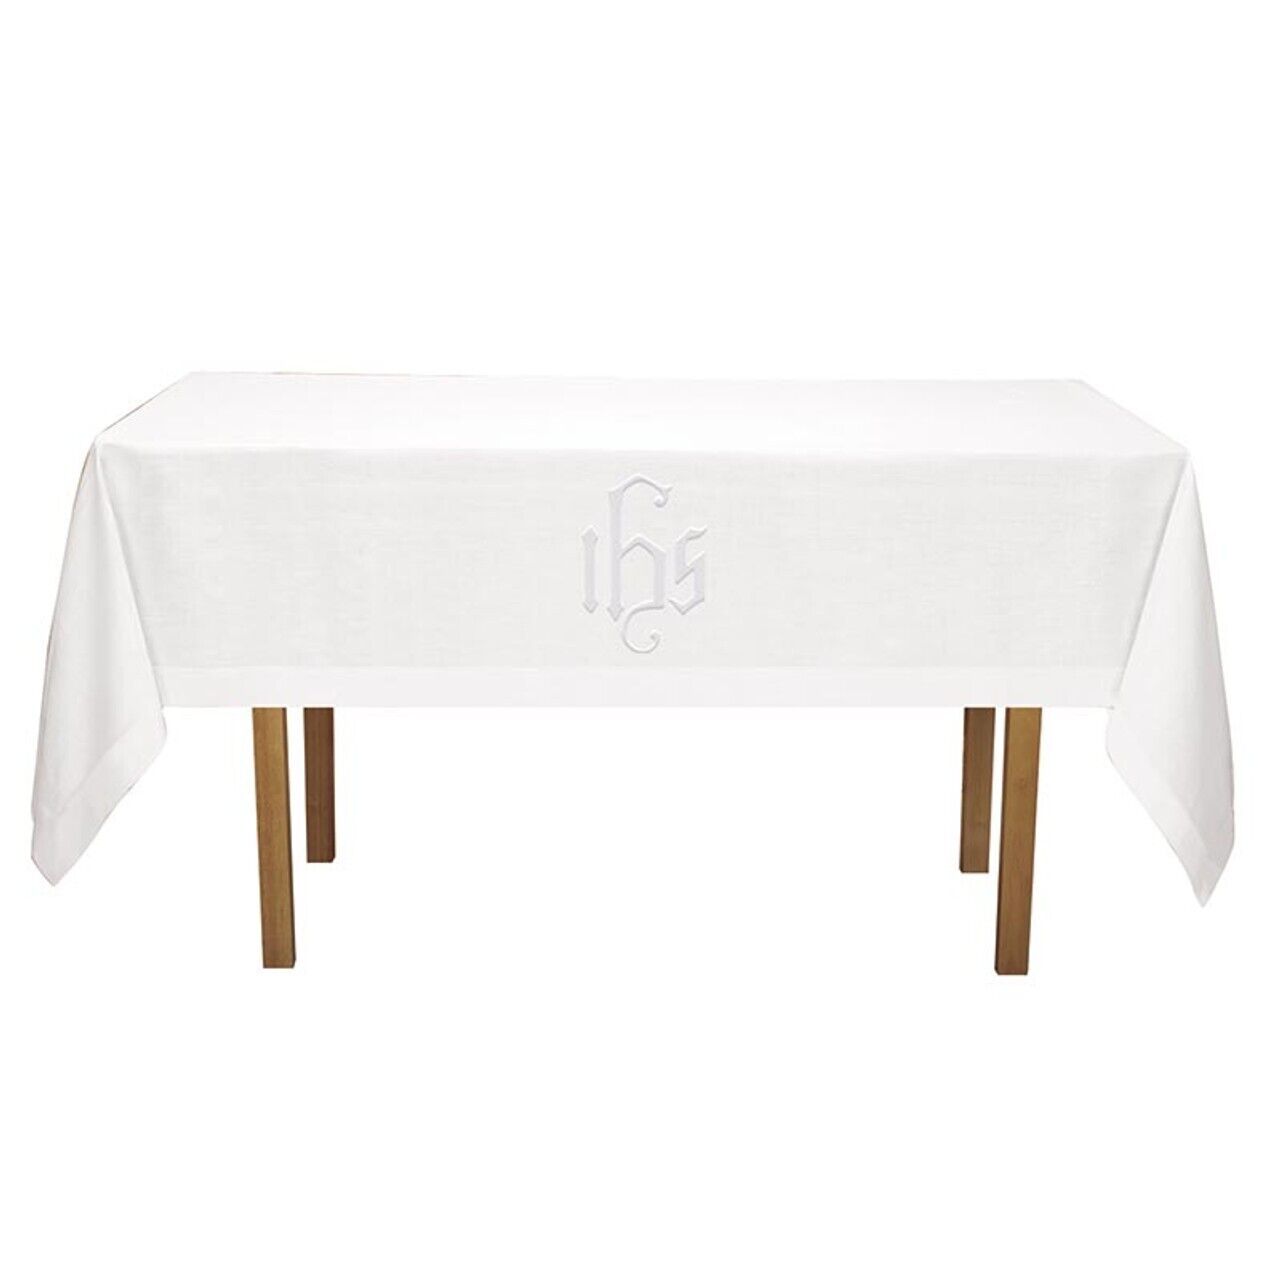 Altar Frontal 100% Linen Church Supplies